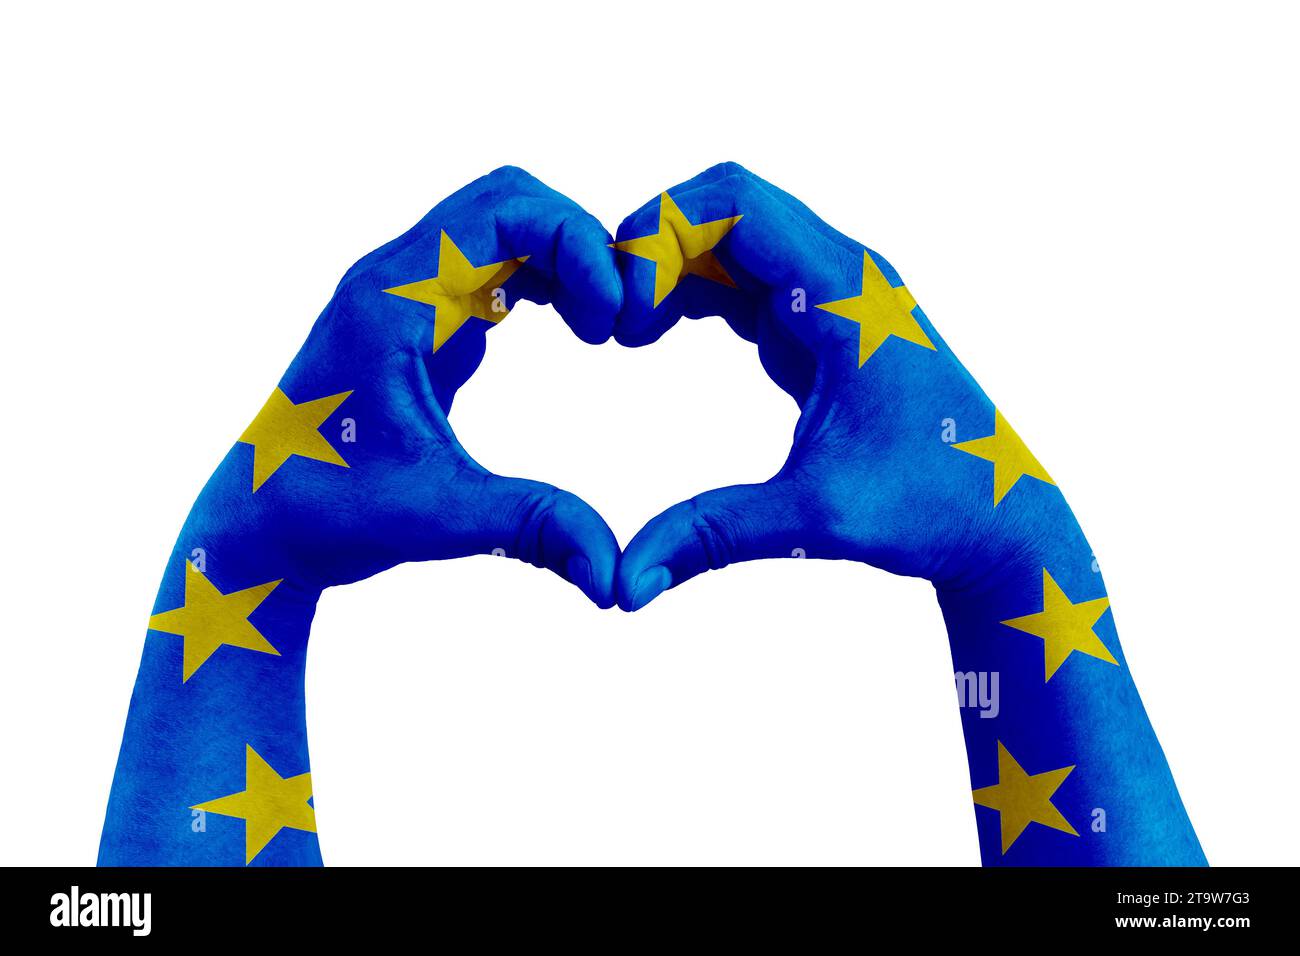 Beten Sie für europa, Menschenhände in Herzform mit der Flagge europas auf weißem Hintergrund, Konzept für Hoffnung und hilfreiche Unterstützung für die Opfer der europäischen Gewalt Stockfoto